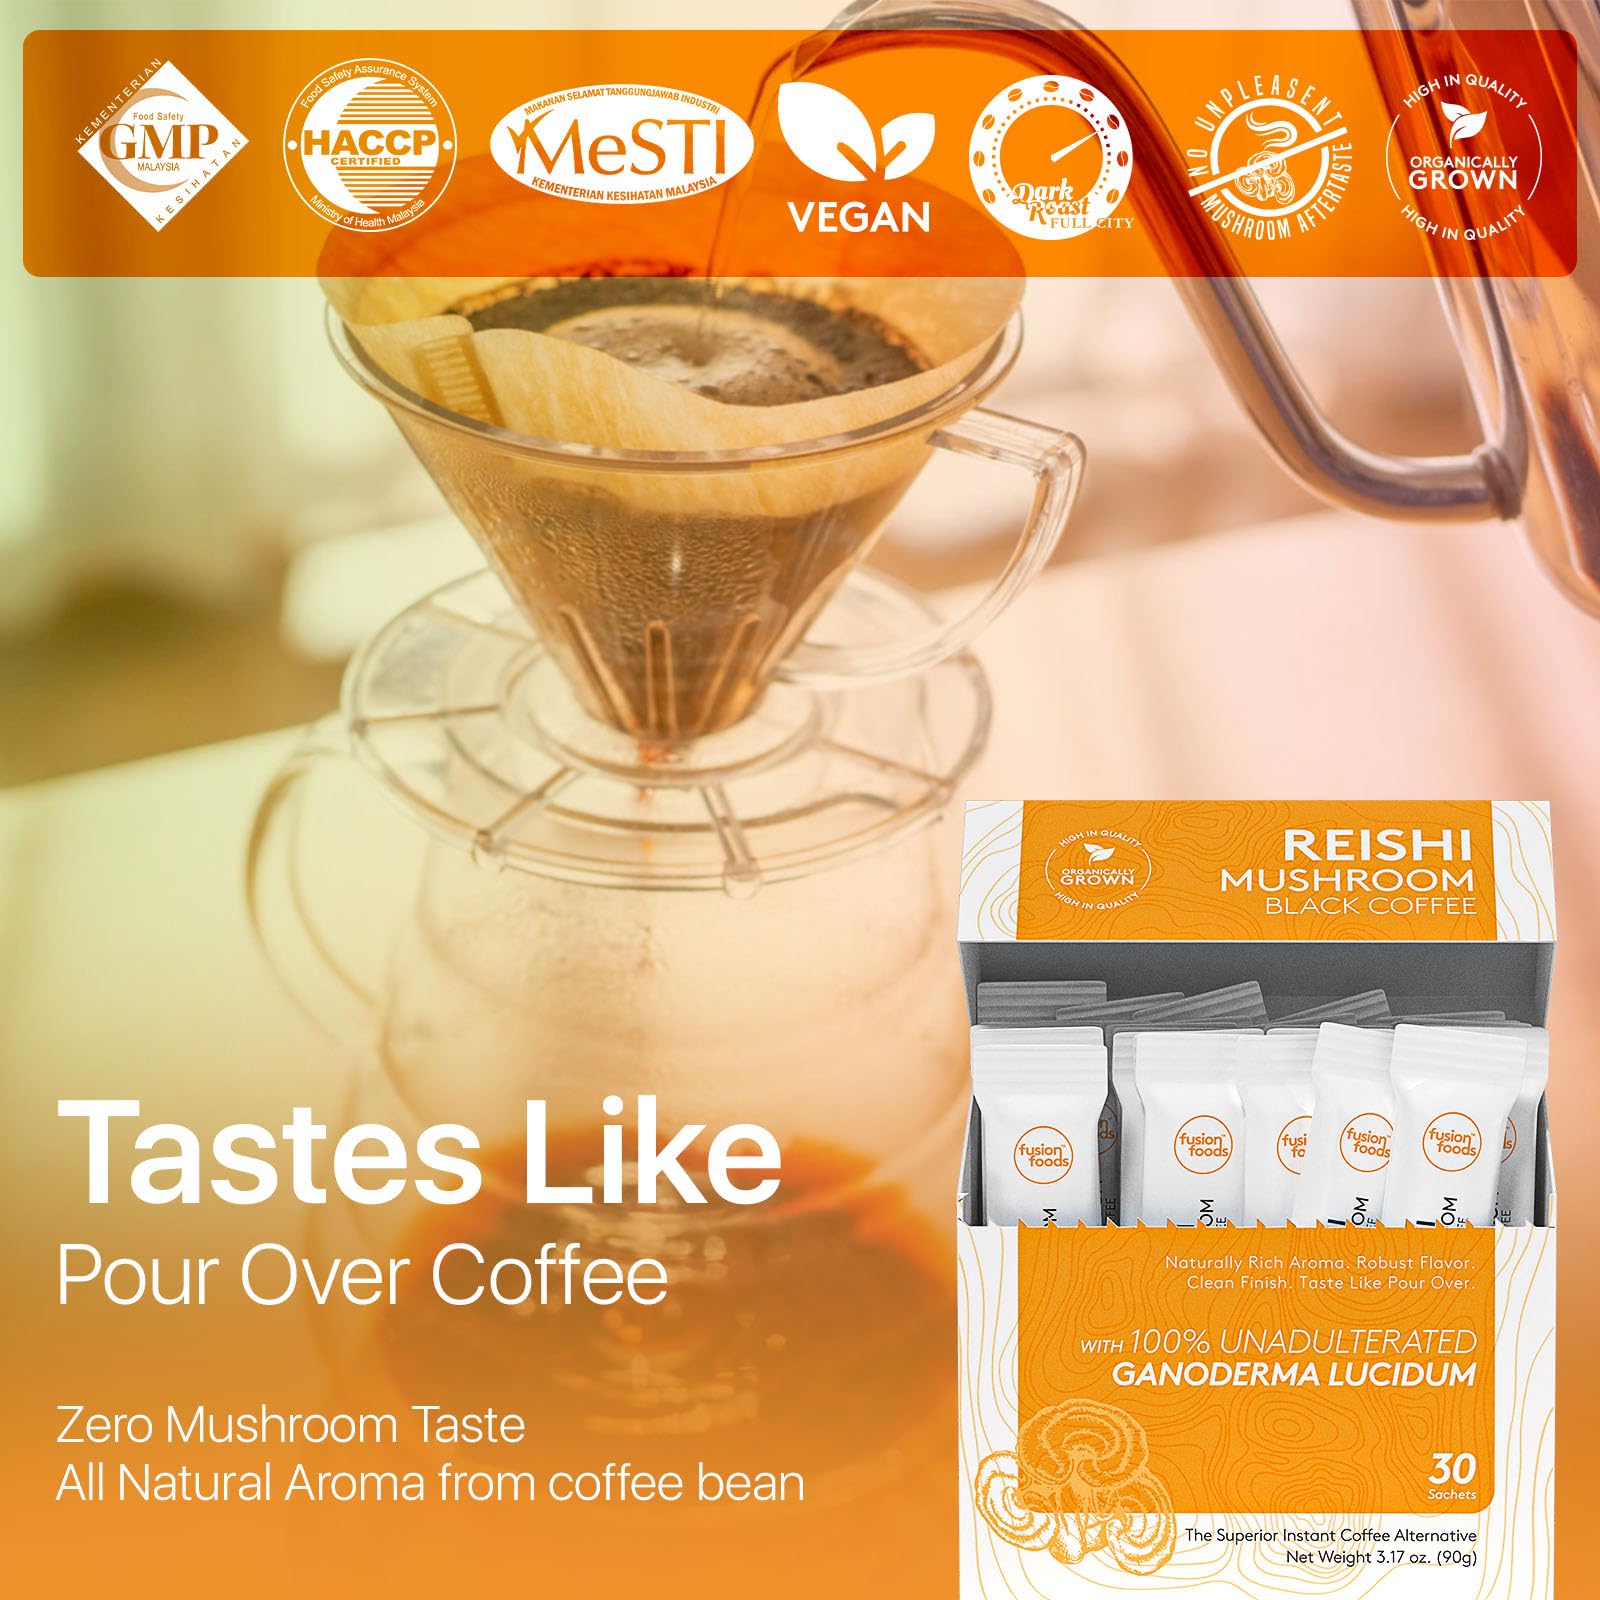 Reishi Mushroom Black Coffee by fusion foods™ | All Natural Unadulterated Reishi Mushroom Ganoderma | Robust Aroma & Taste - 30 counts